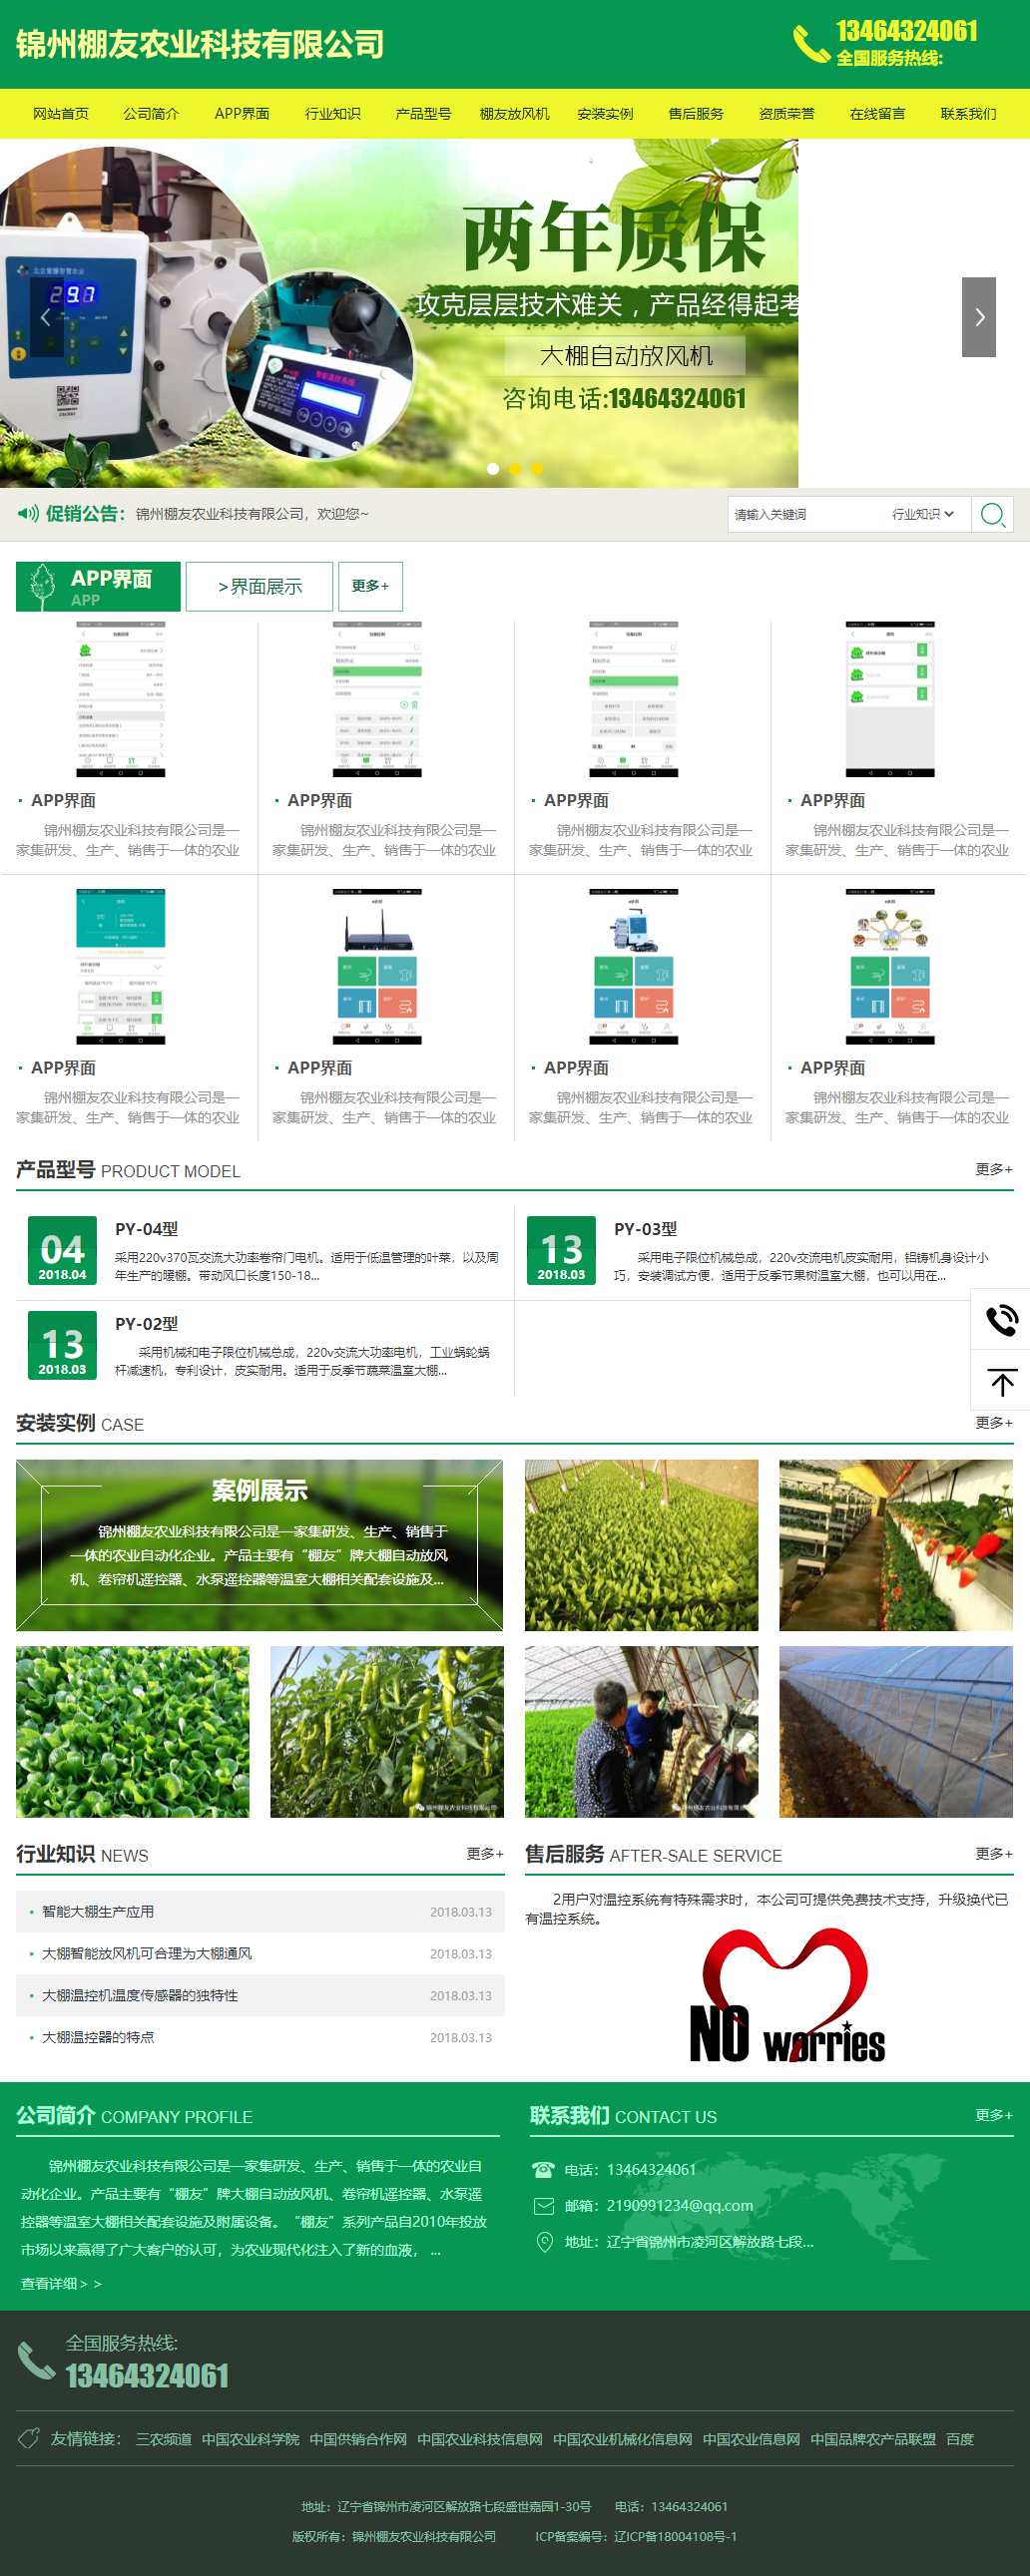 锦州棚友农业科技有限公司网站案例